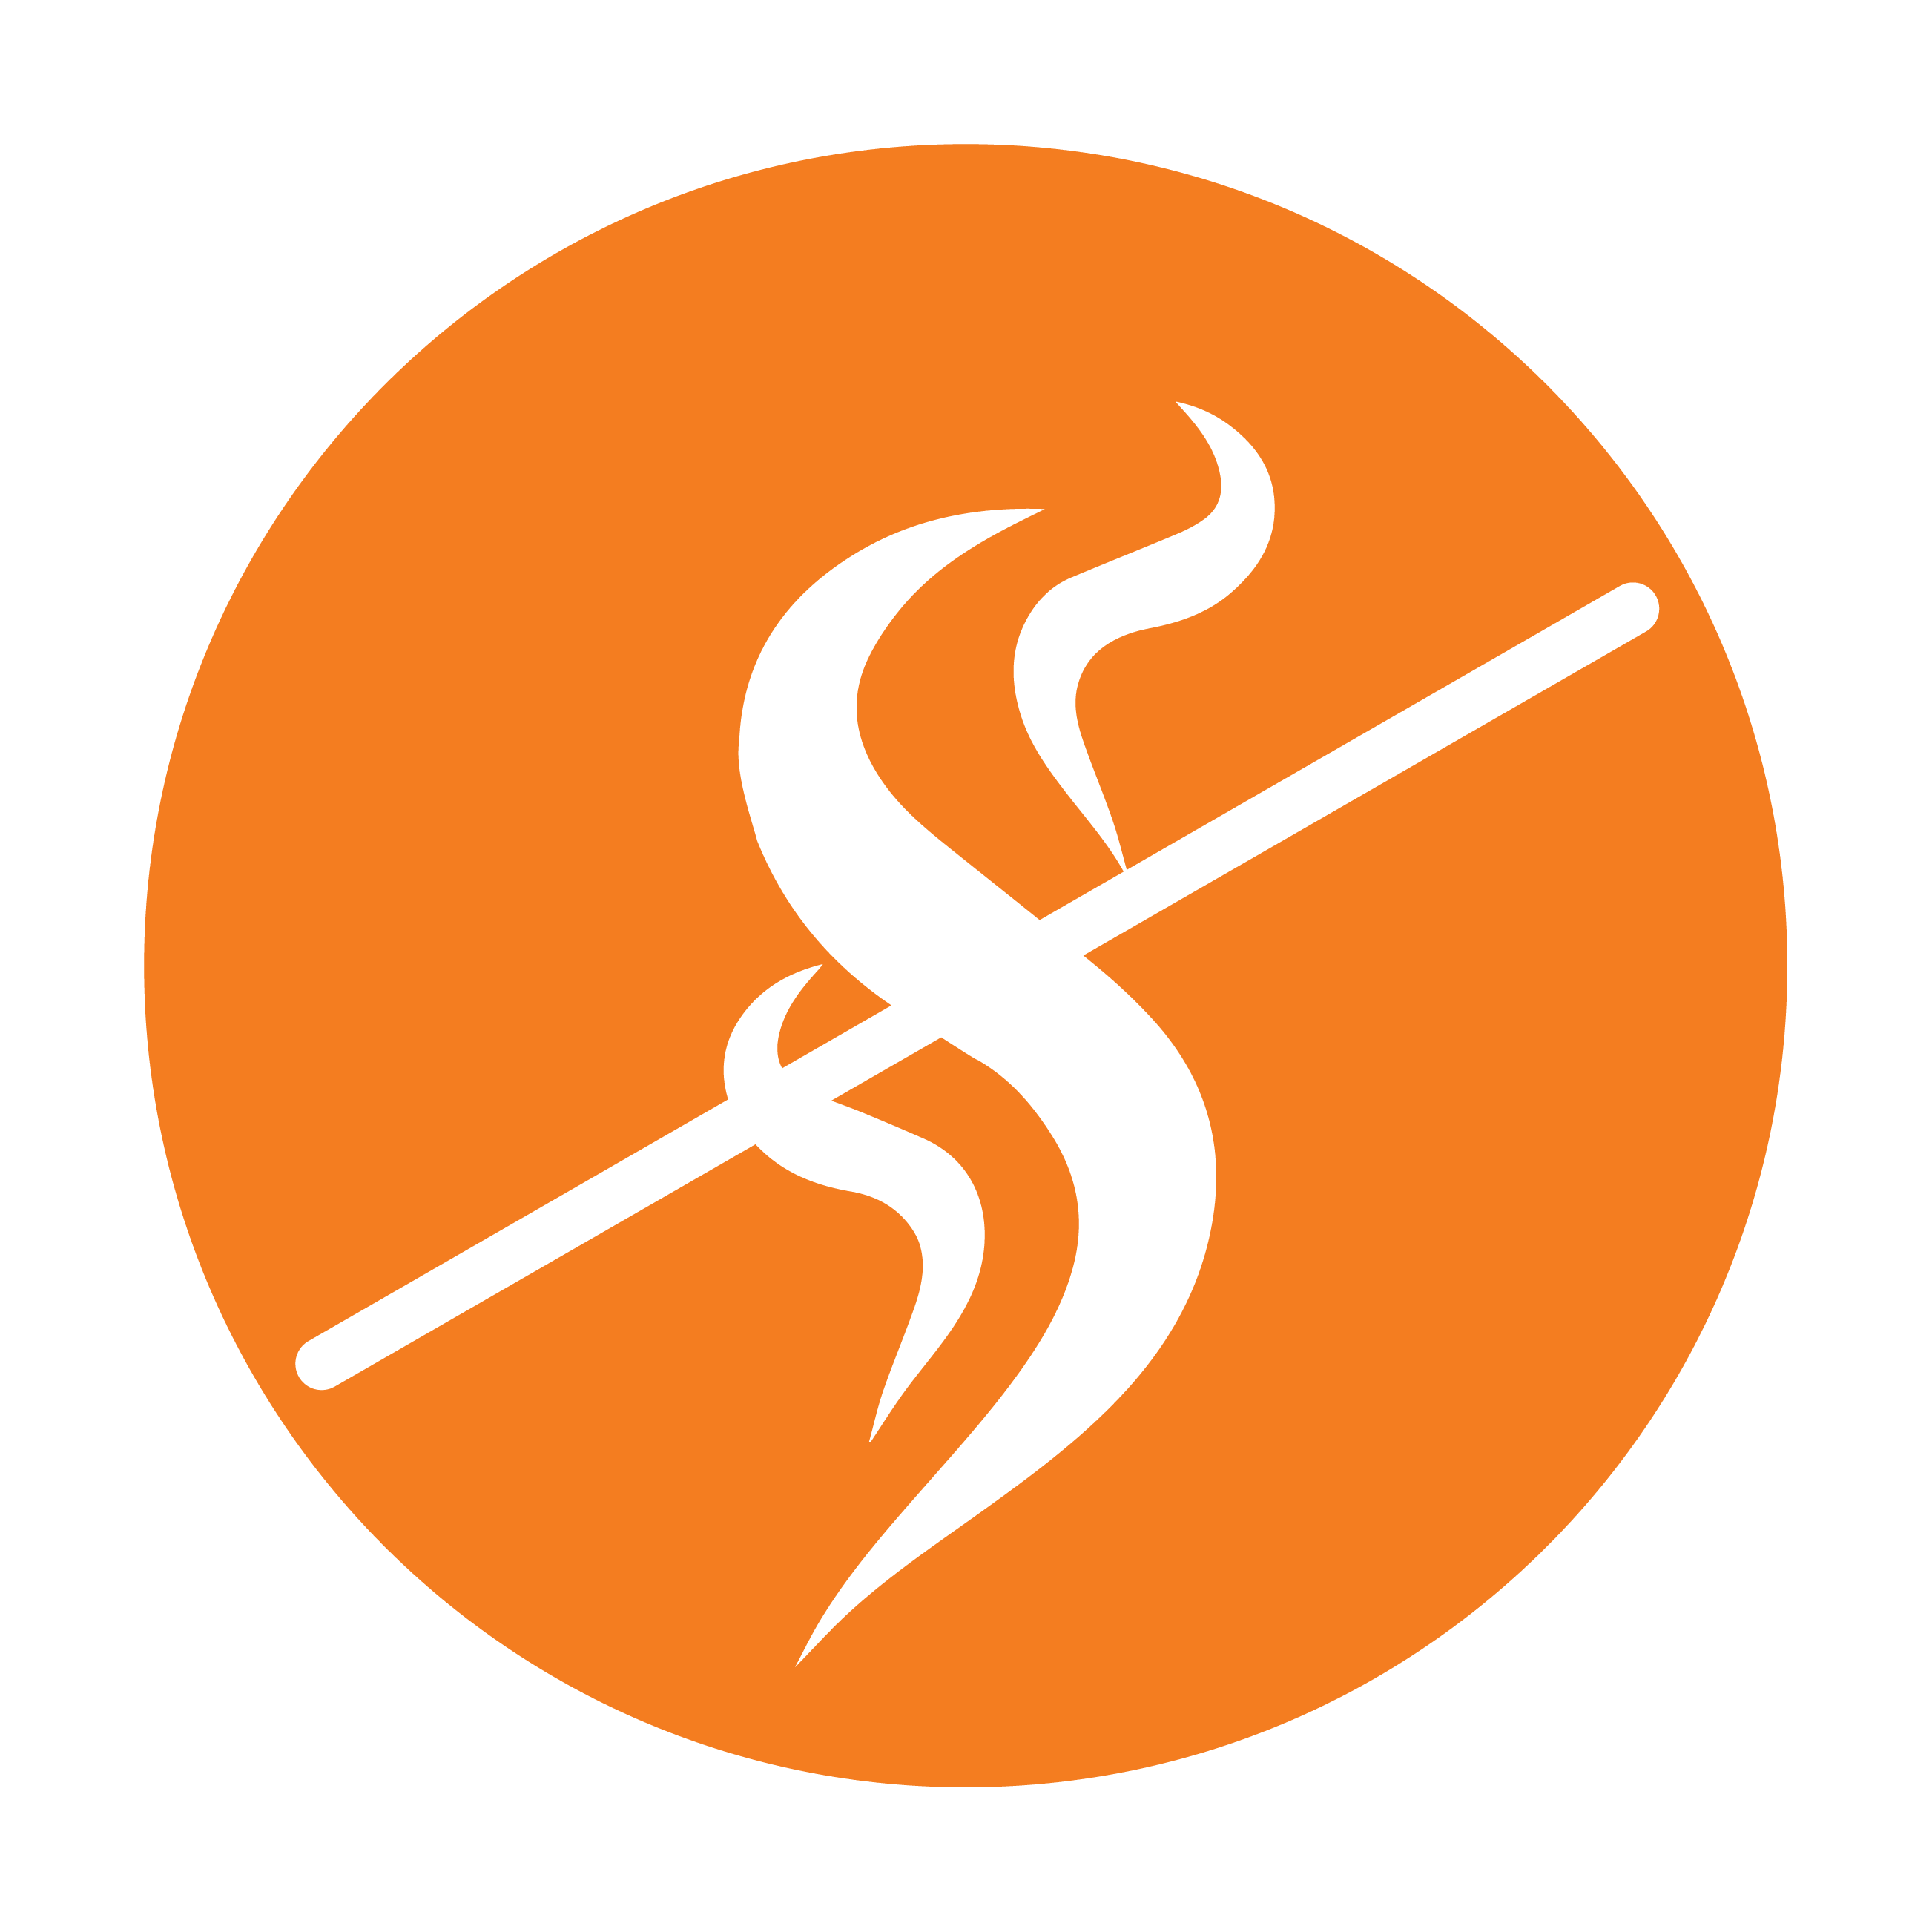 Esbit Icon in Orange zeigt Rauch, der durchgestrichen ist, als Piktogramm.